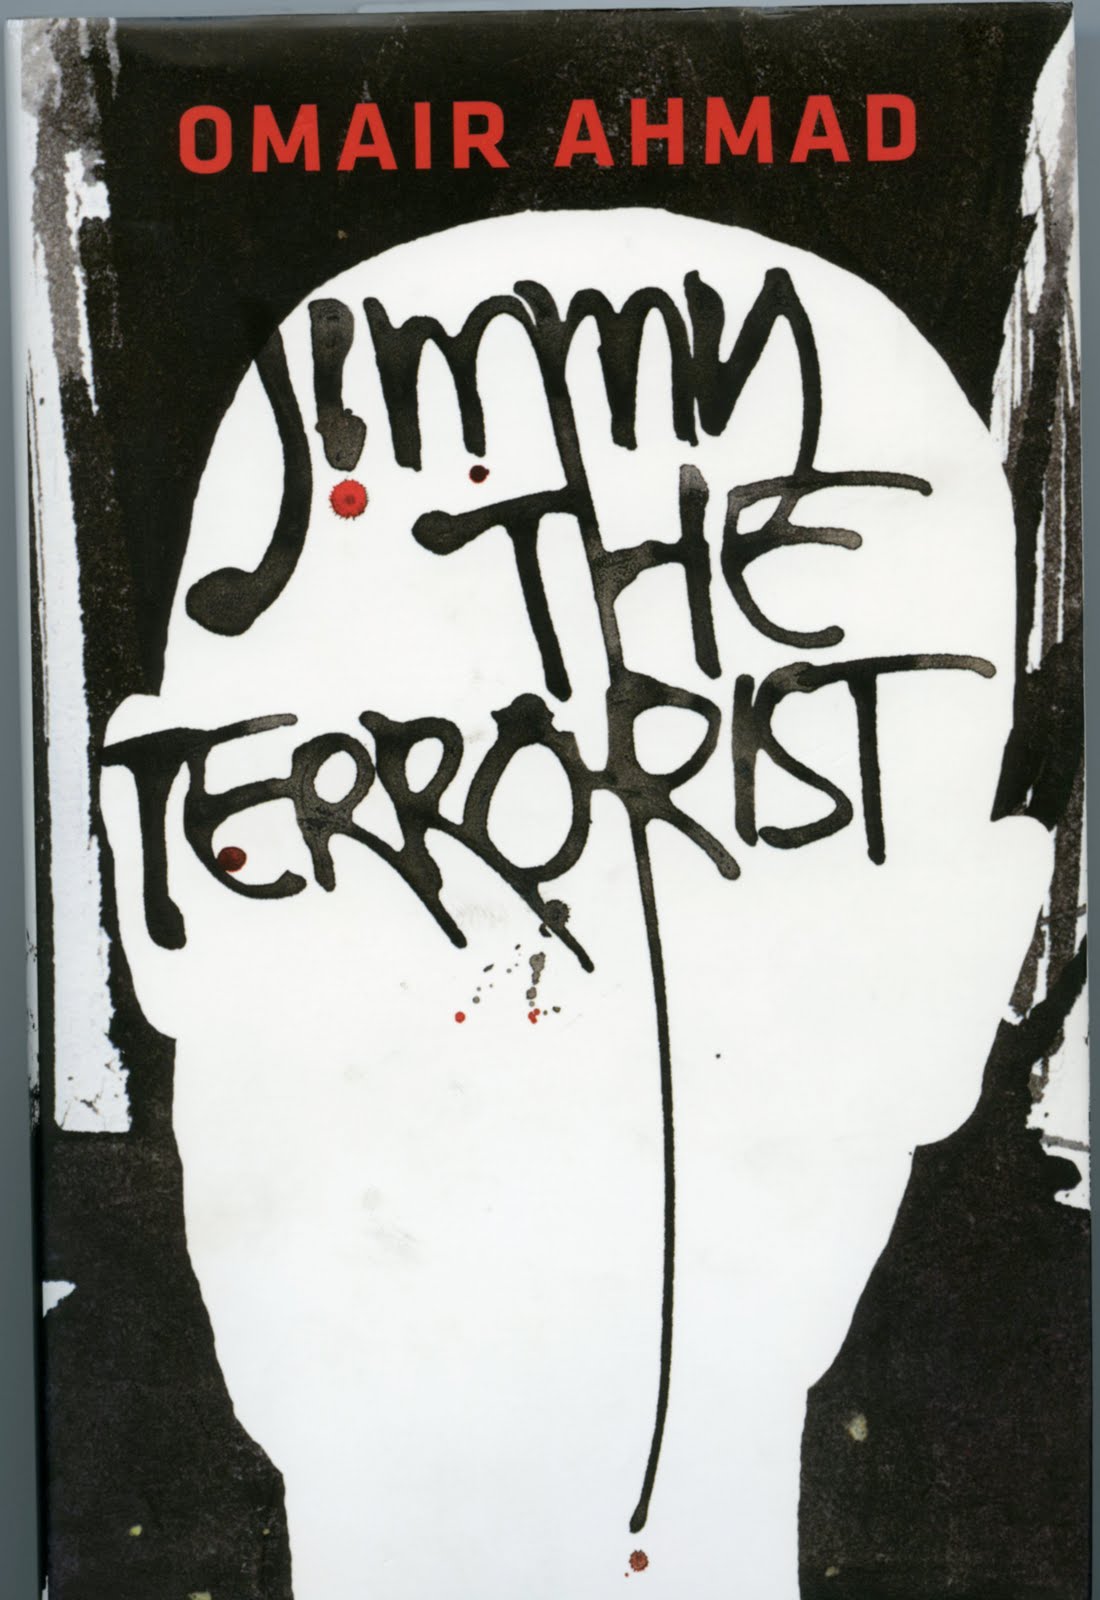 Jimmy, The Terrorist